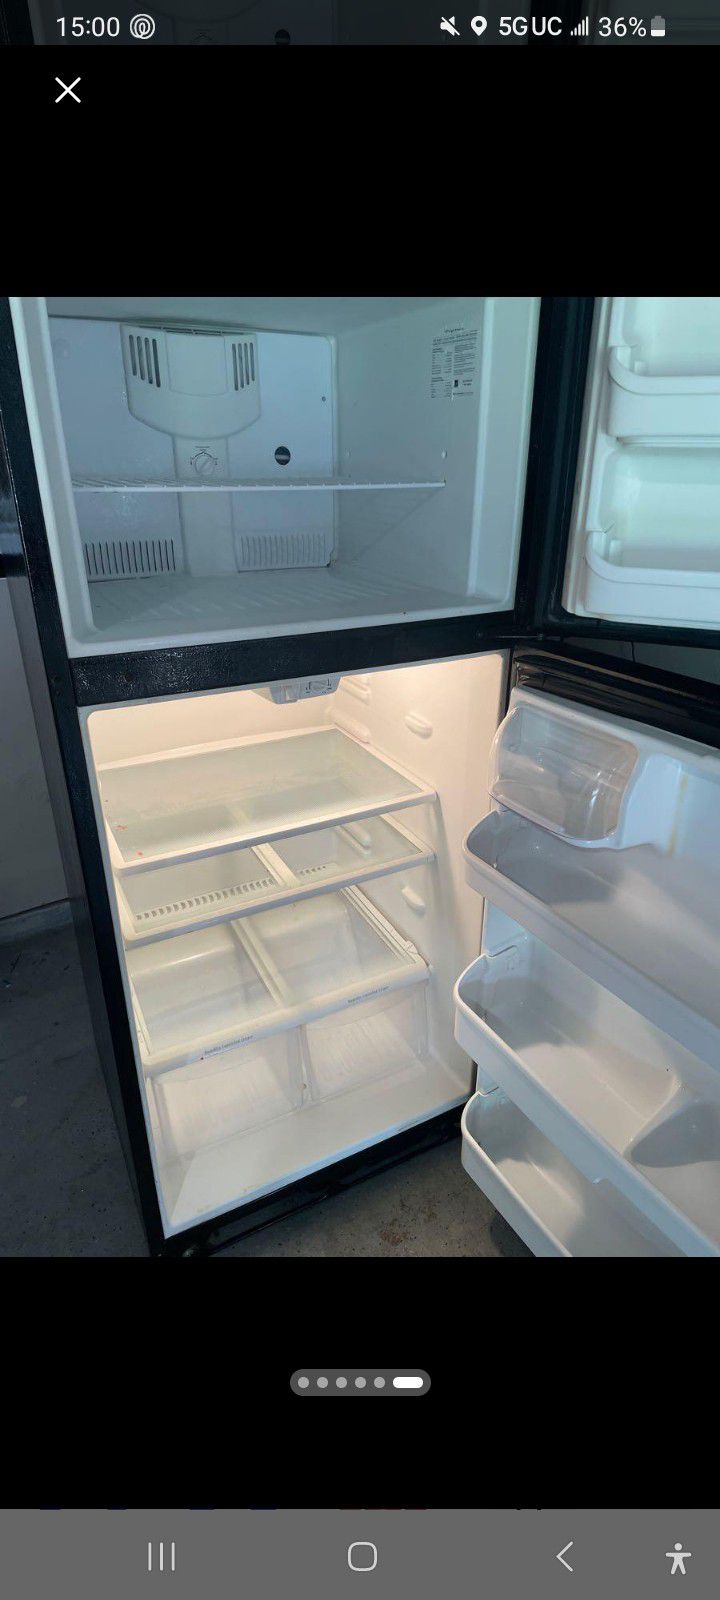 Refrigerator, read Description